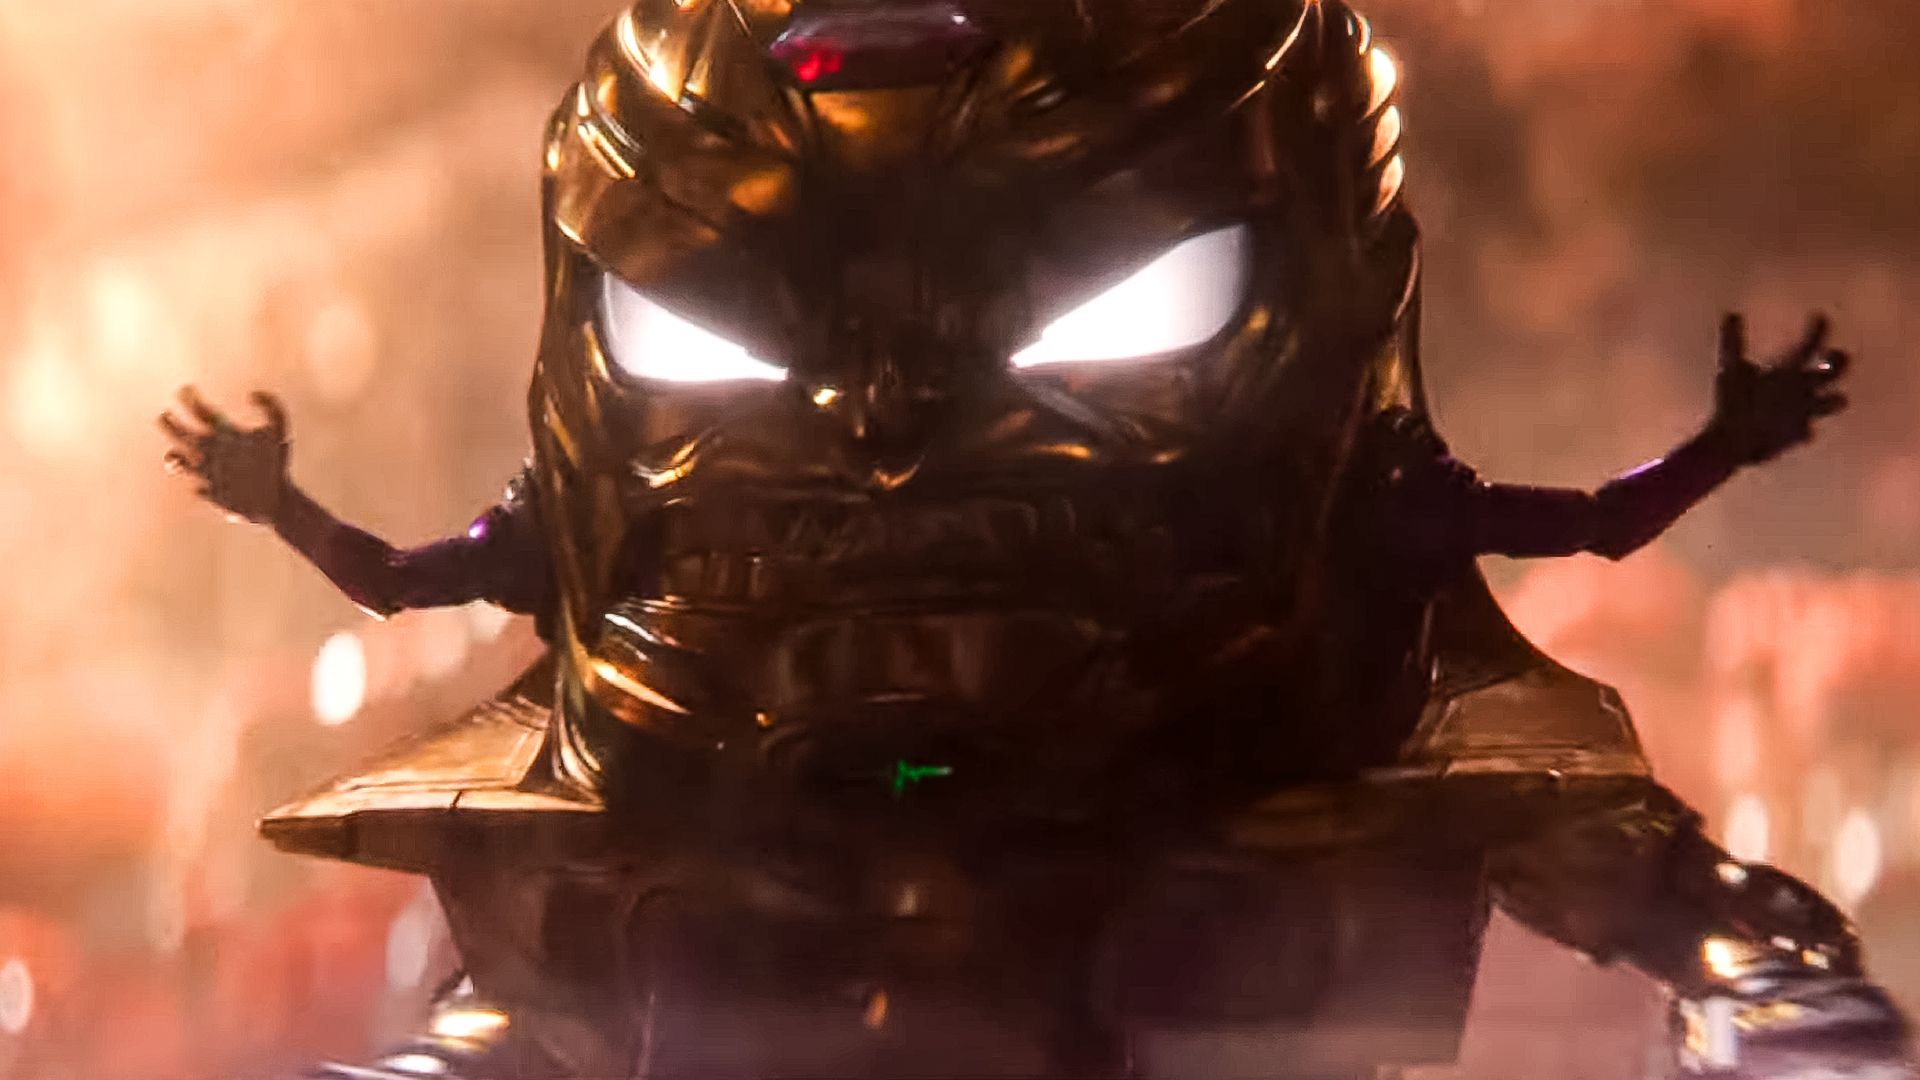 Homem-Formiga 3: novo trailer revela Kang e Modok furiosos